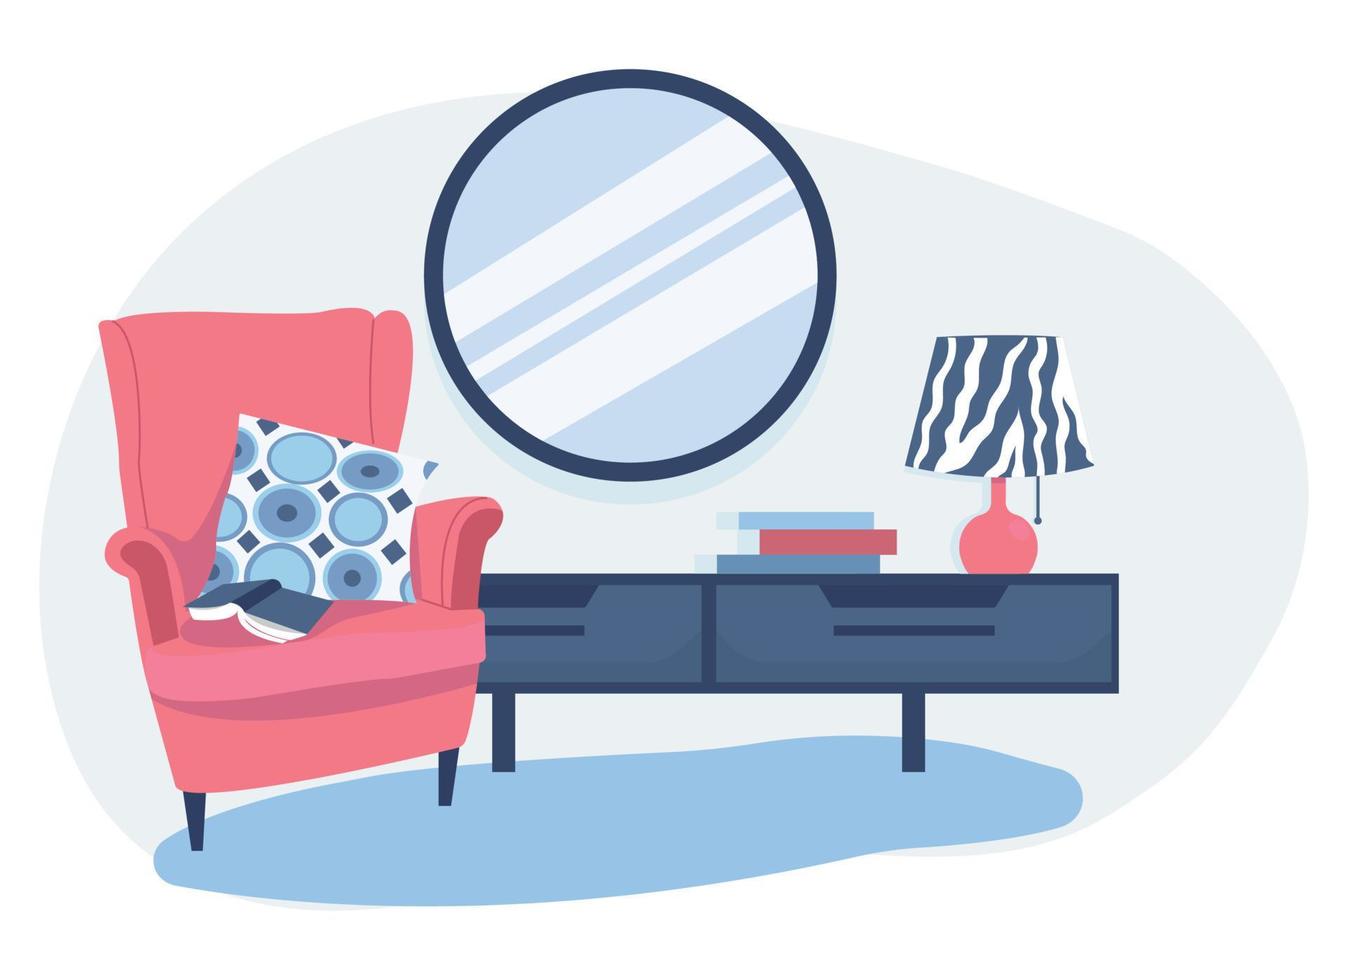 interior de dormitorio moderno. Rincón de dormitorio con sillón, cómoda y espejo. ilustración de vector plano sobre un fondo blanco.